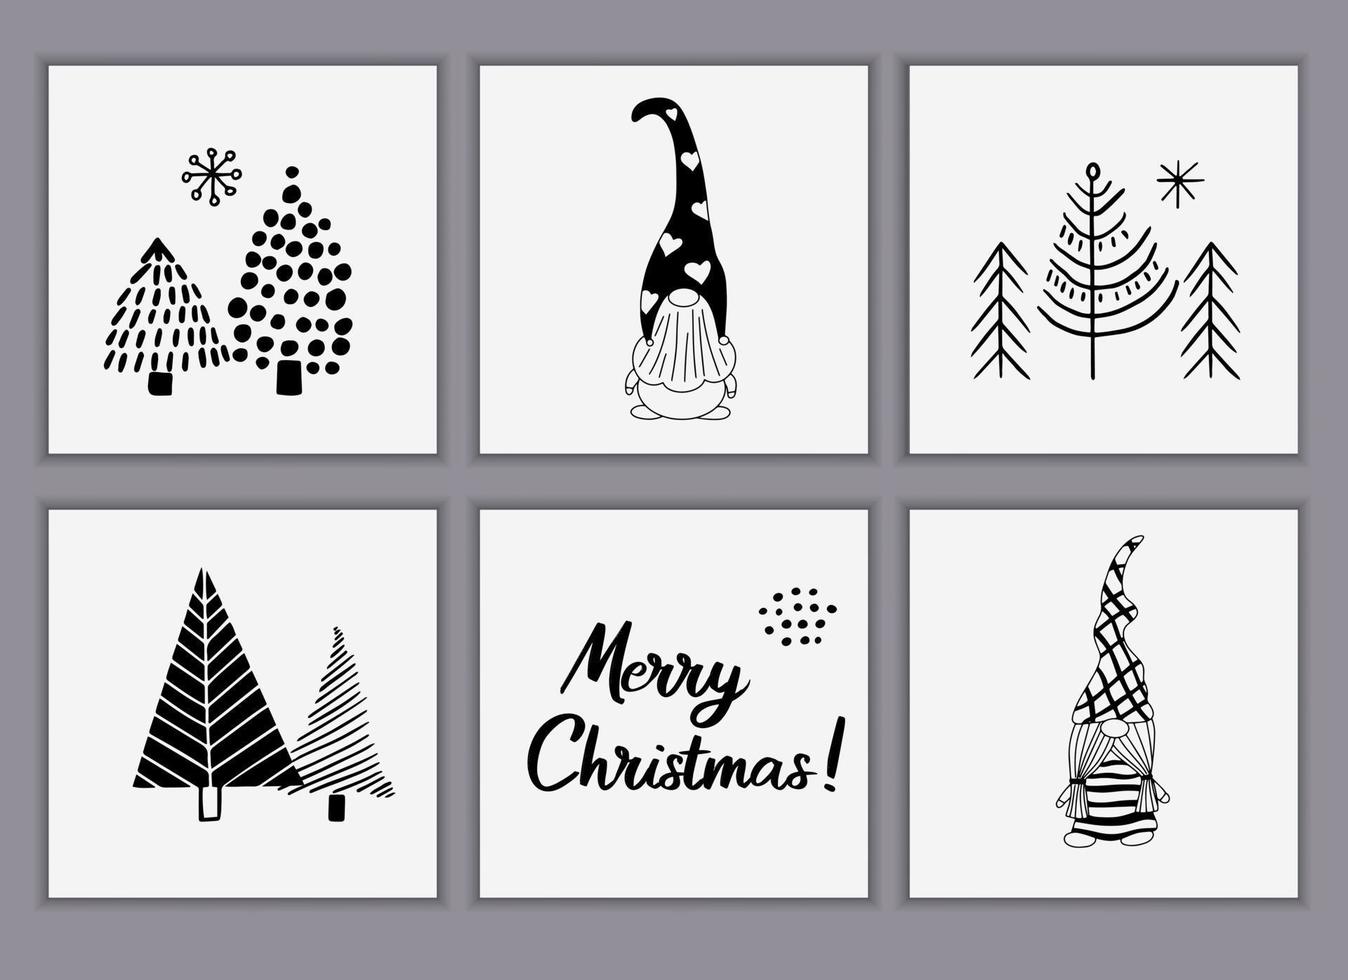 conjunto de tarjetas de felicitación navideñas hechas de elementos de garabatos dibujados a mano. árboles de navidad, lindos gnomos en estilo escandinavo. plantillas vectoriales para carteles o invitaciones vector